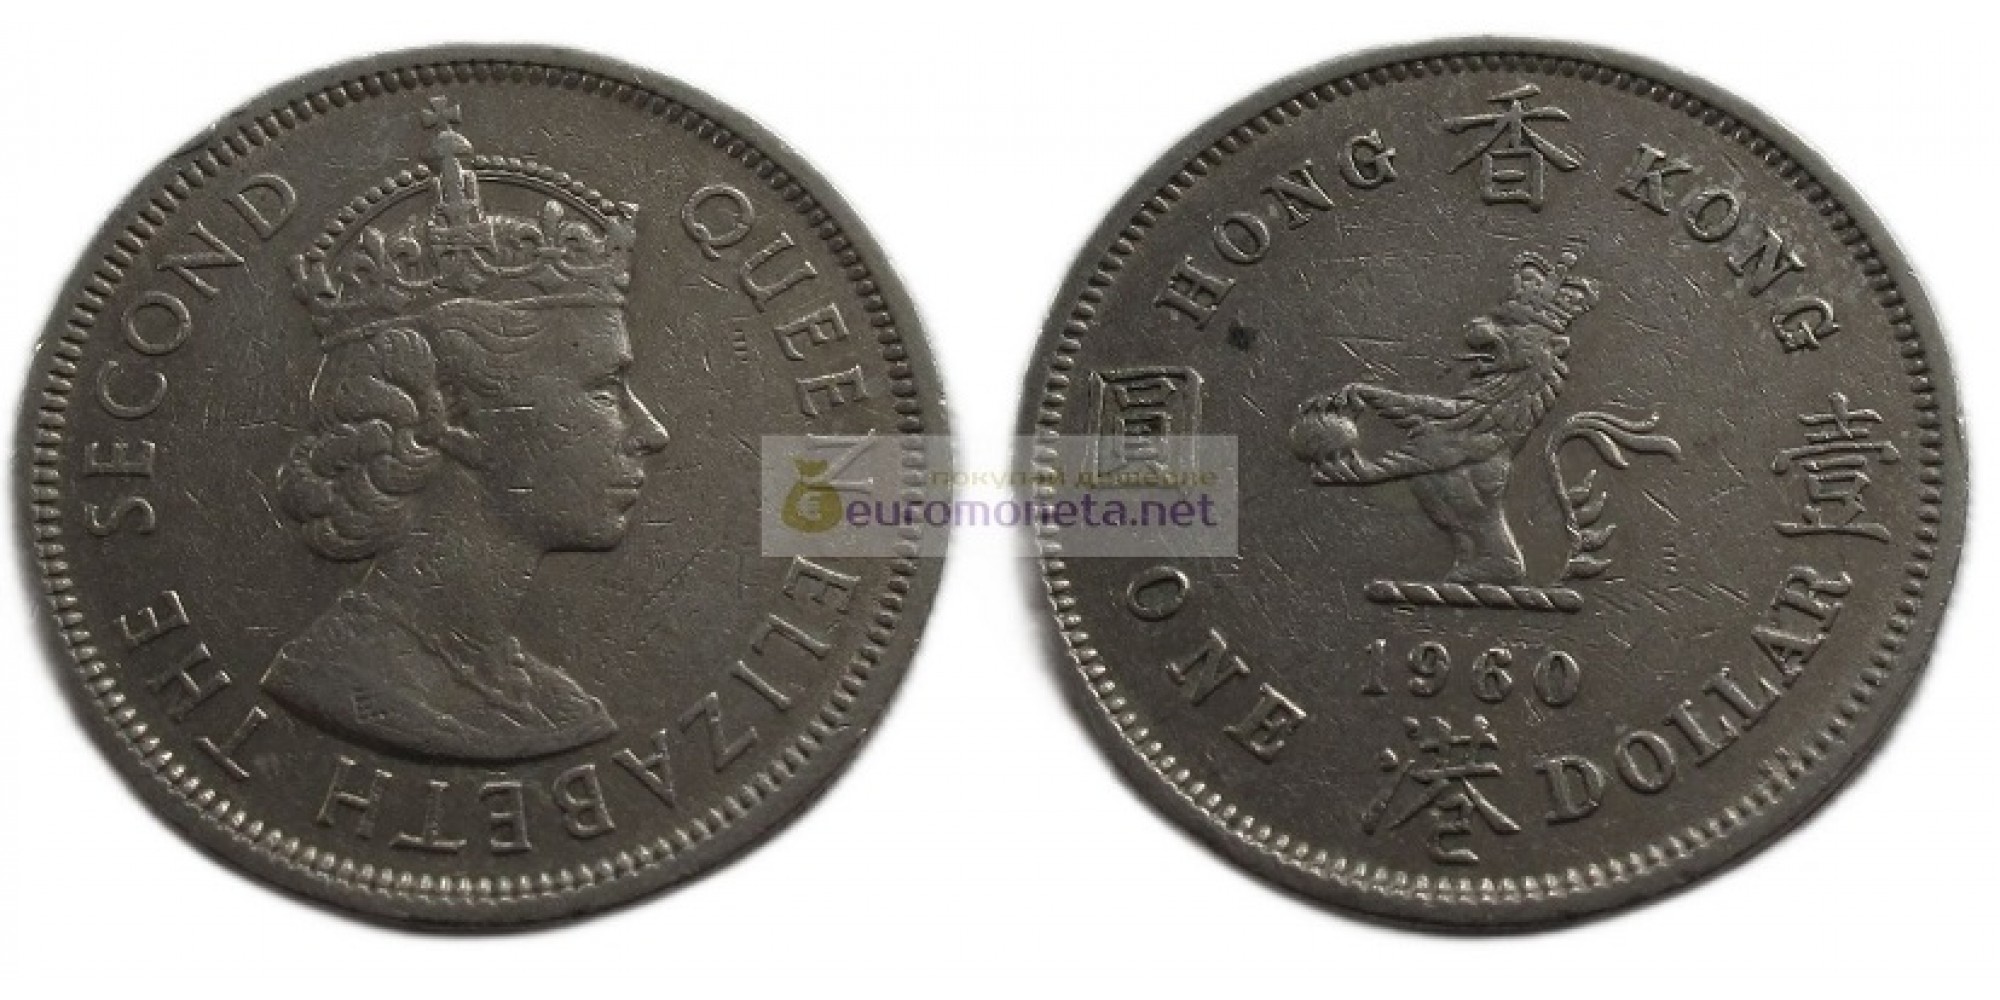 Гонконг 1 доллар 1960 год. Елизавета II